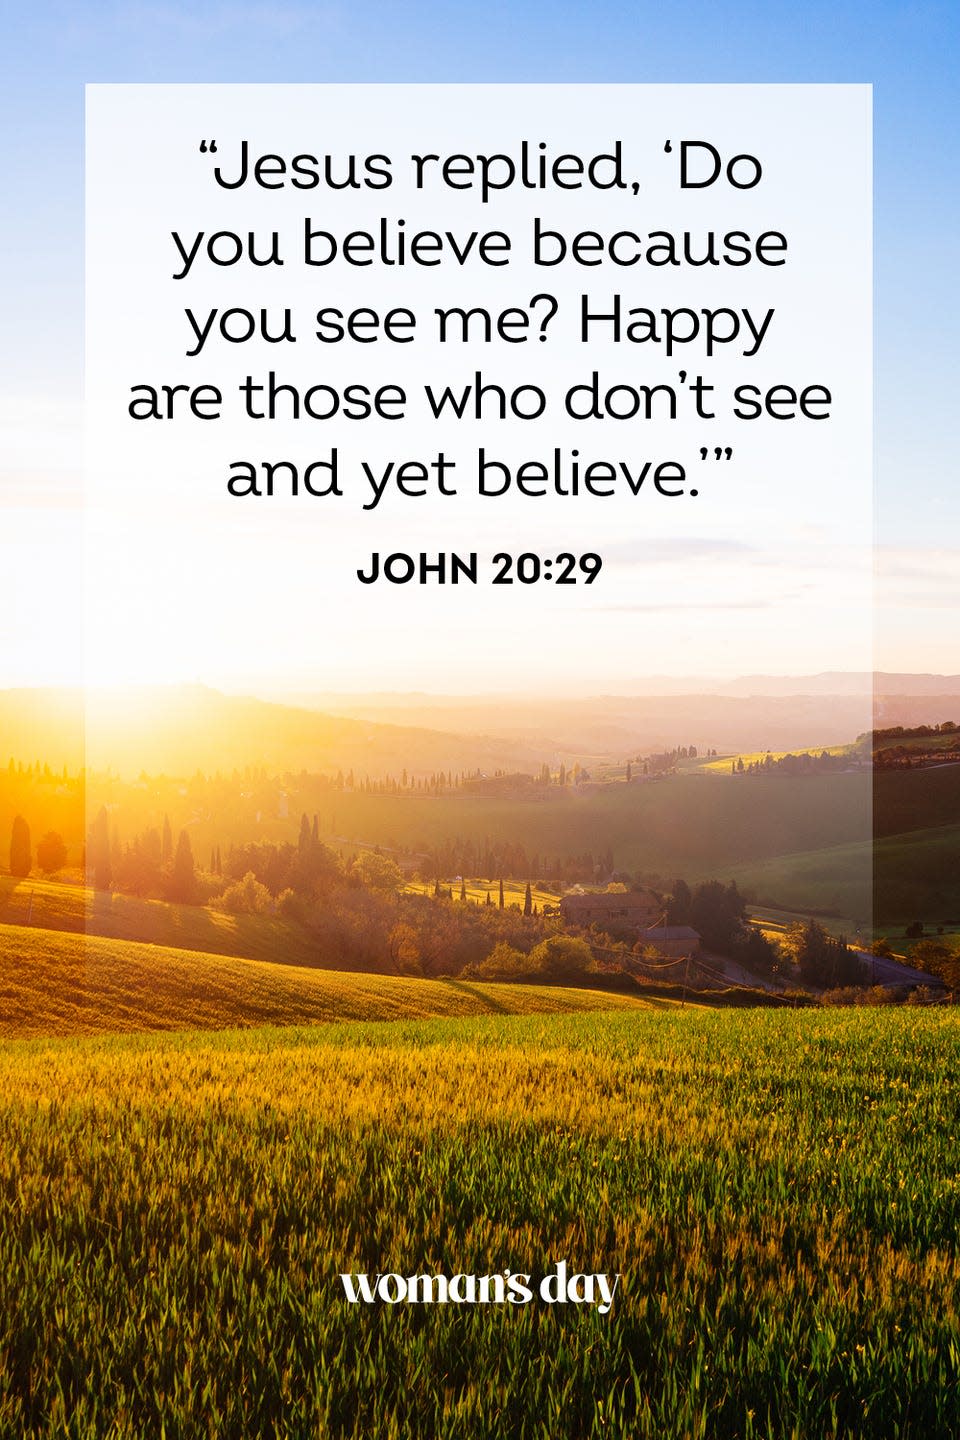 3) John 20:29